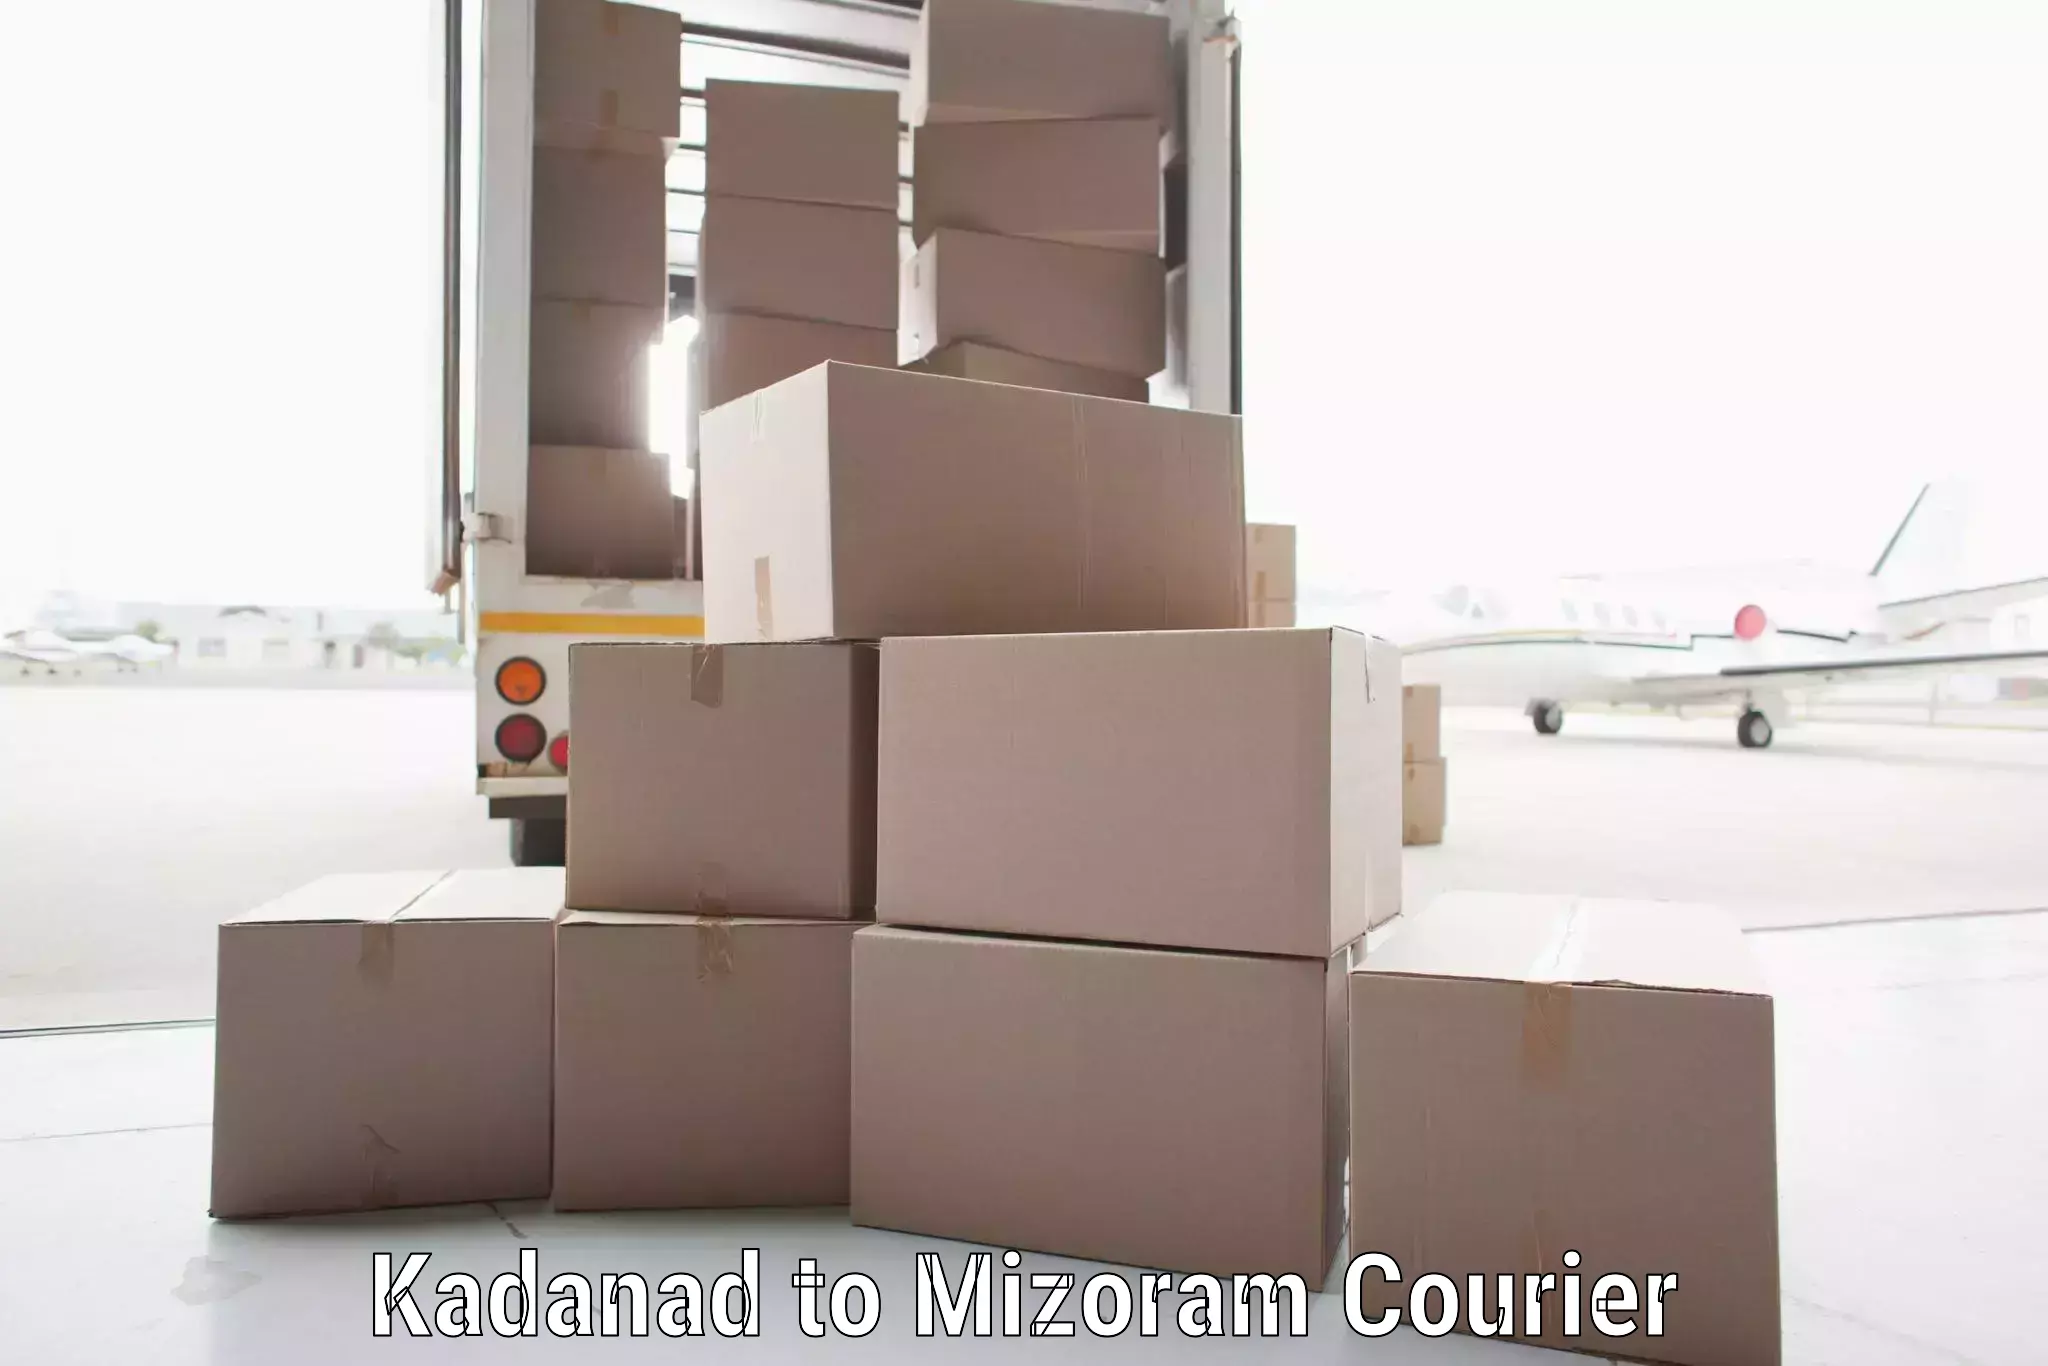 Pharmaceutical courier in Kadanad to Saitual